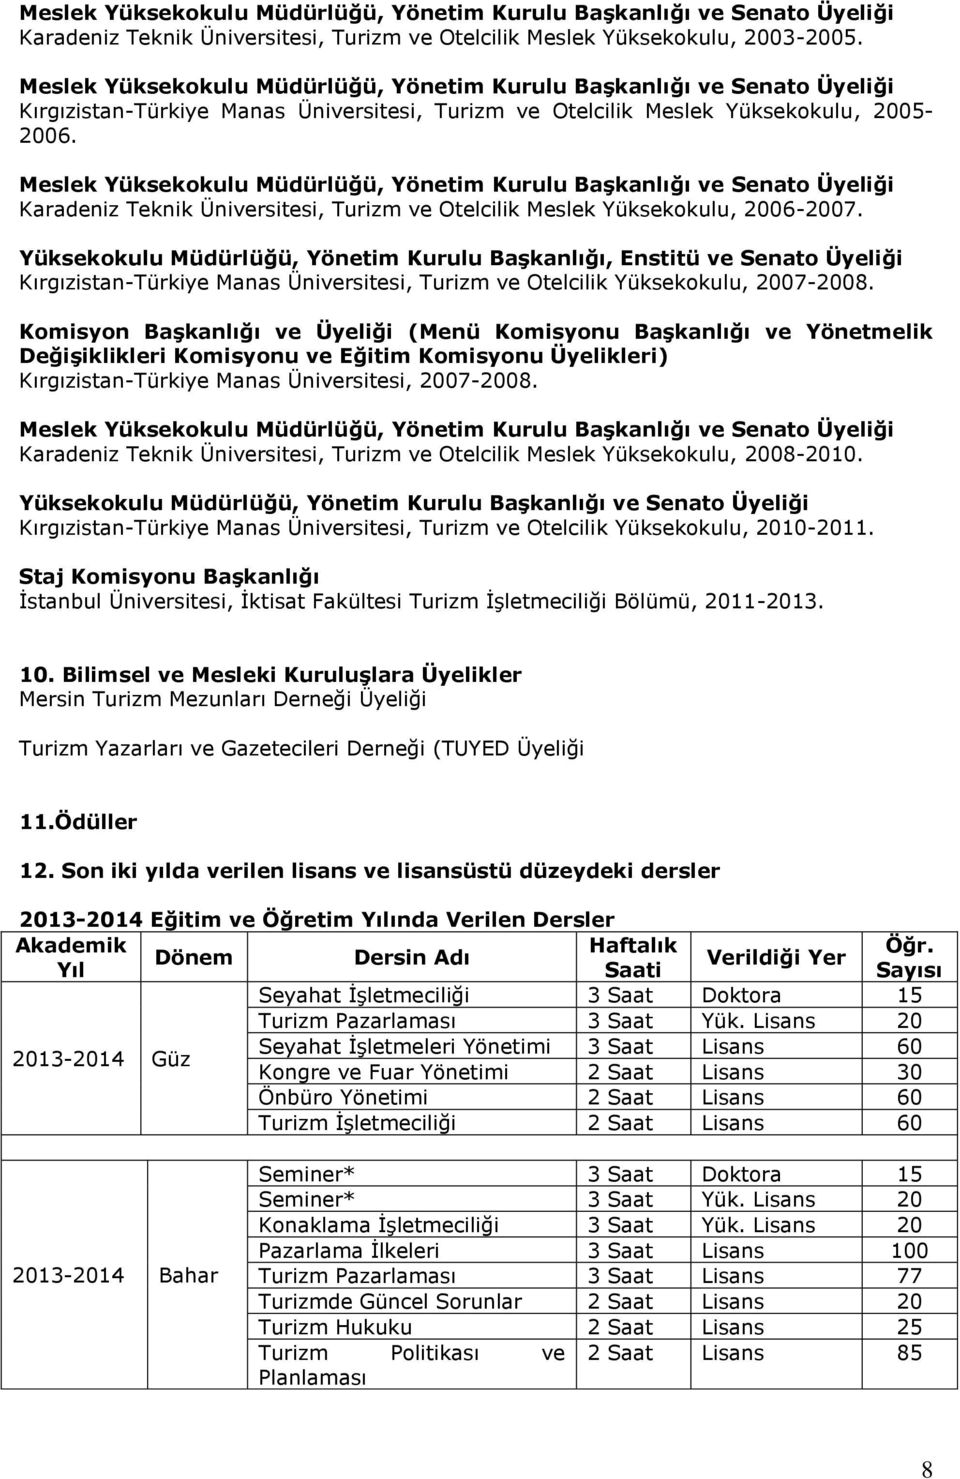 Meslek Yüksekokulu Müdürlüğü, Yönetim Kurulu Başkanlığı ve Senato Üyeliği Karadeniz Teknik Üniversitesi, Turizm ve Otelcilik Meslek Yüksekokulu, 2006-2007.